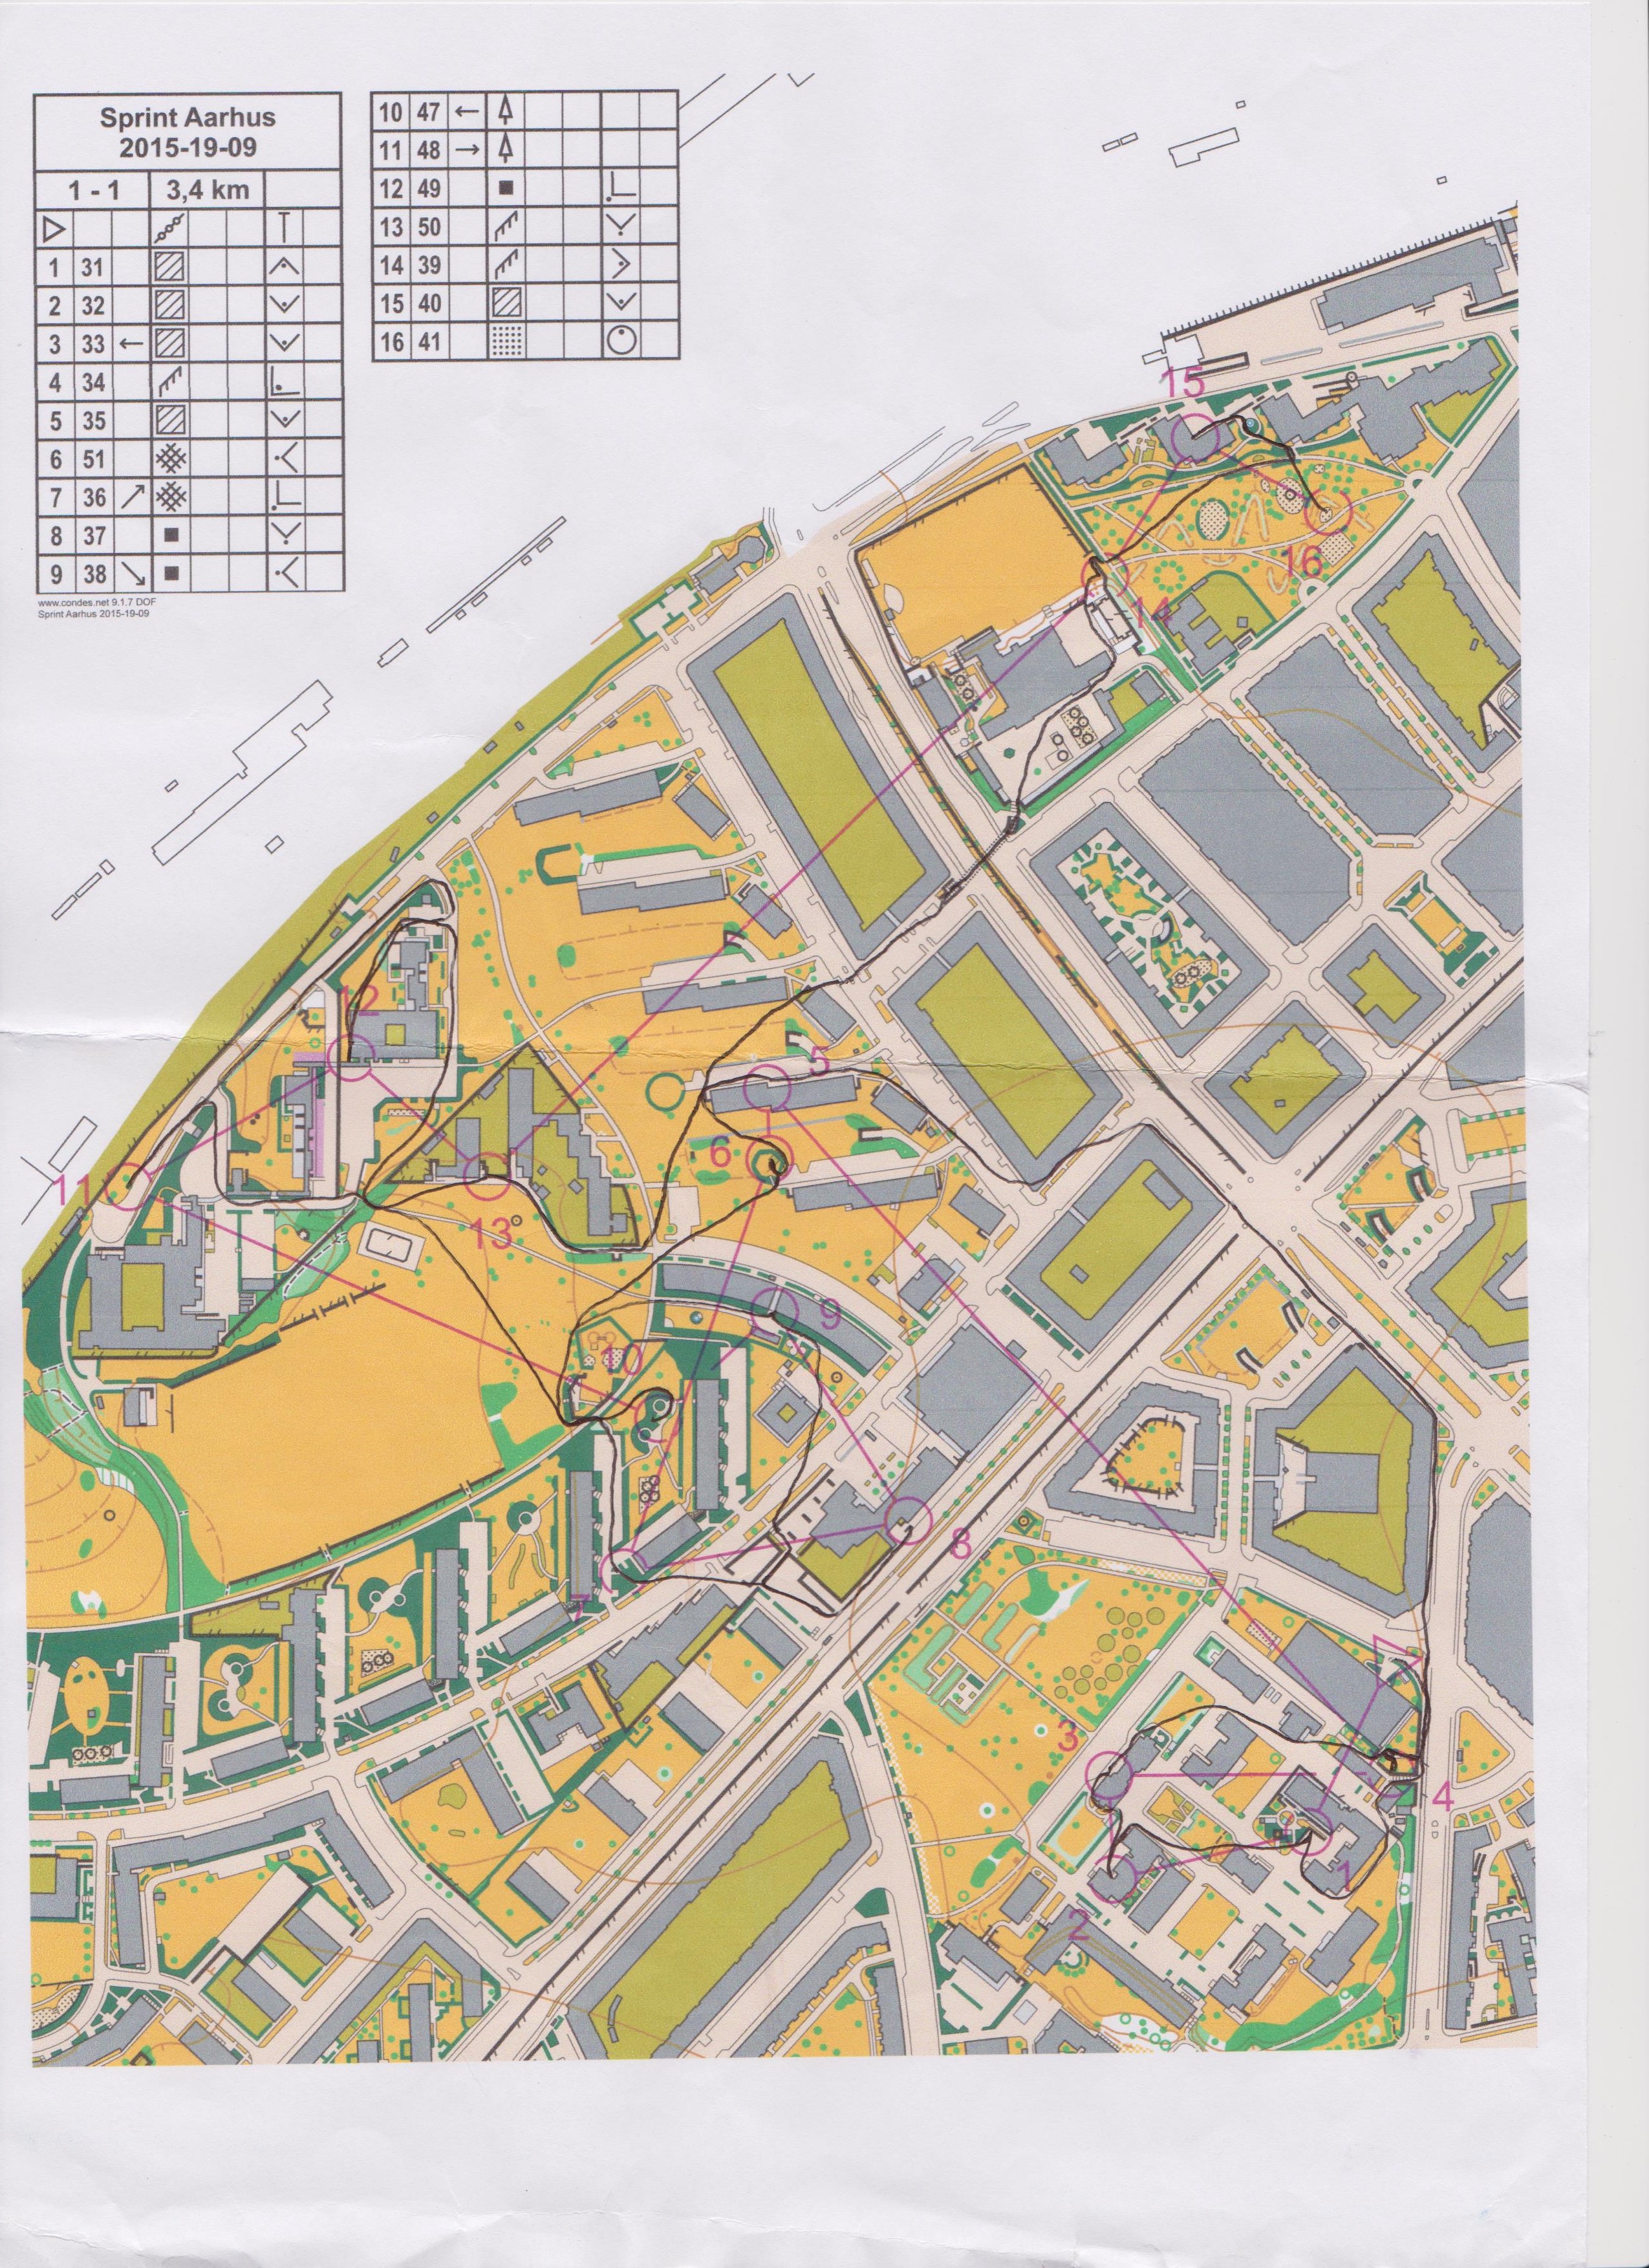 Sprinttræning i Aarhus del 1 (28-09-2015)